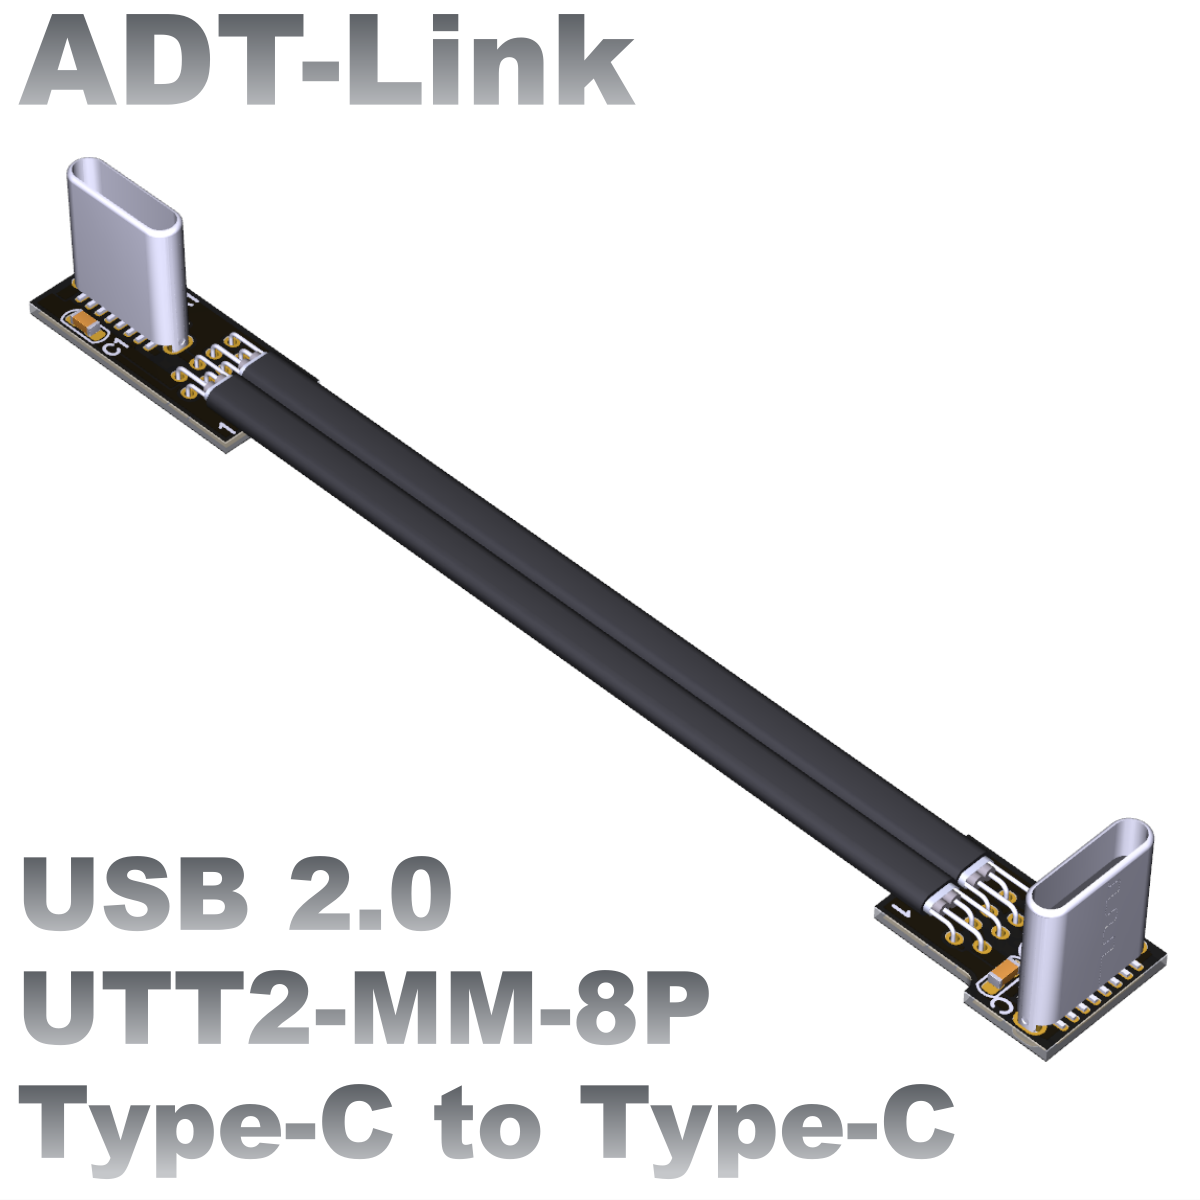 UTT2-MM-8P series 